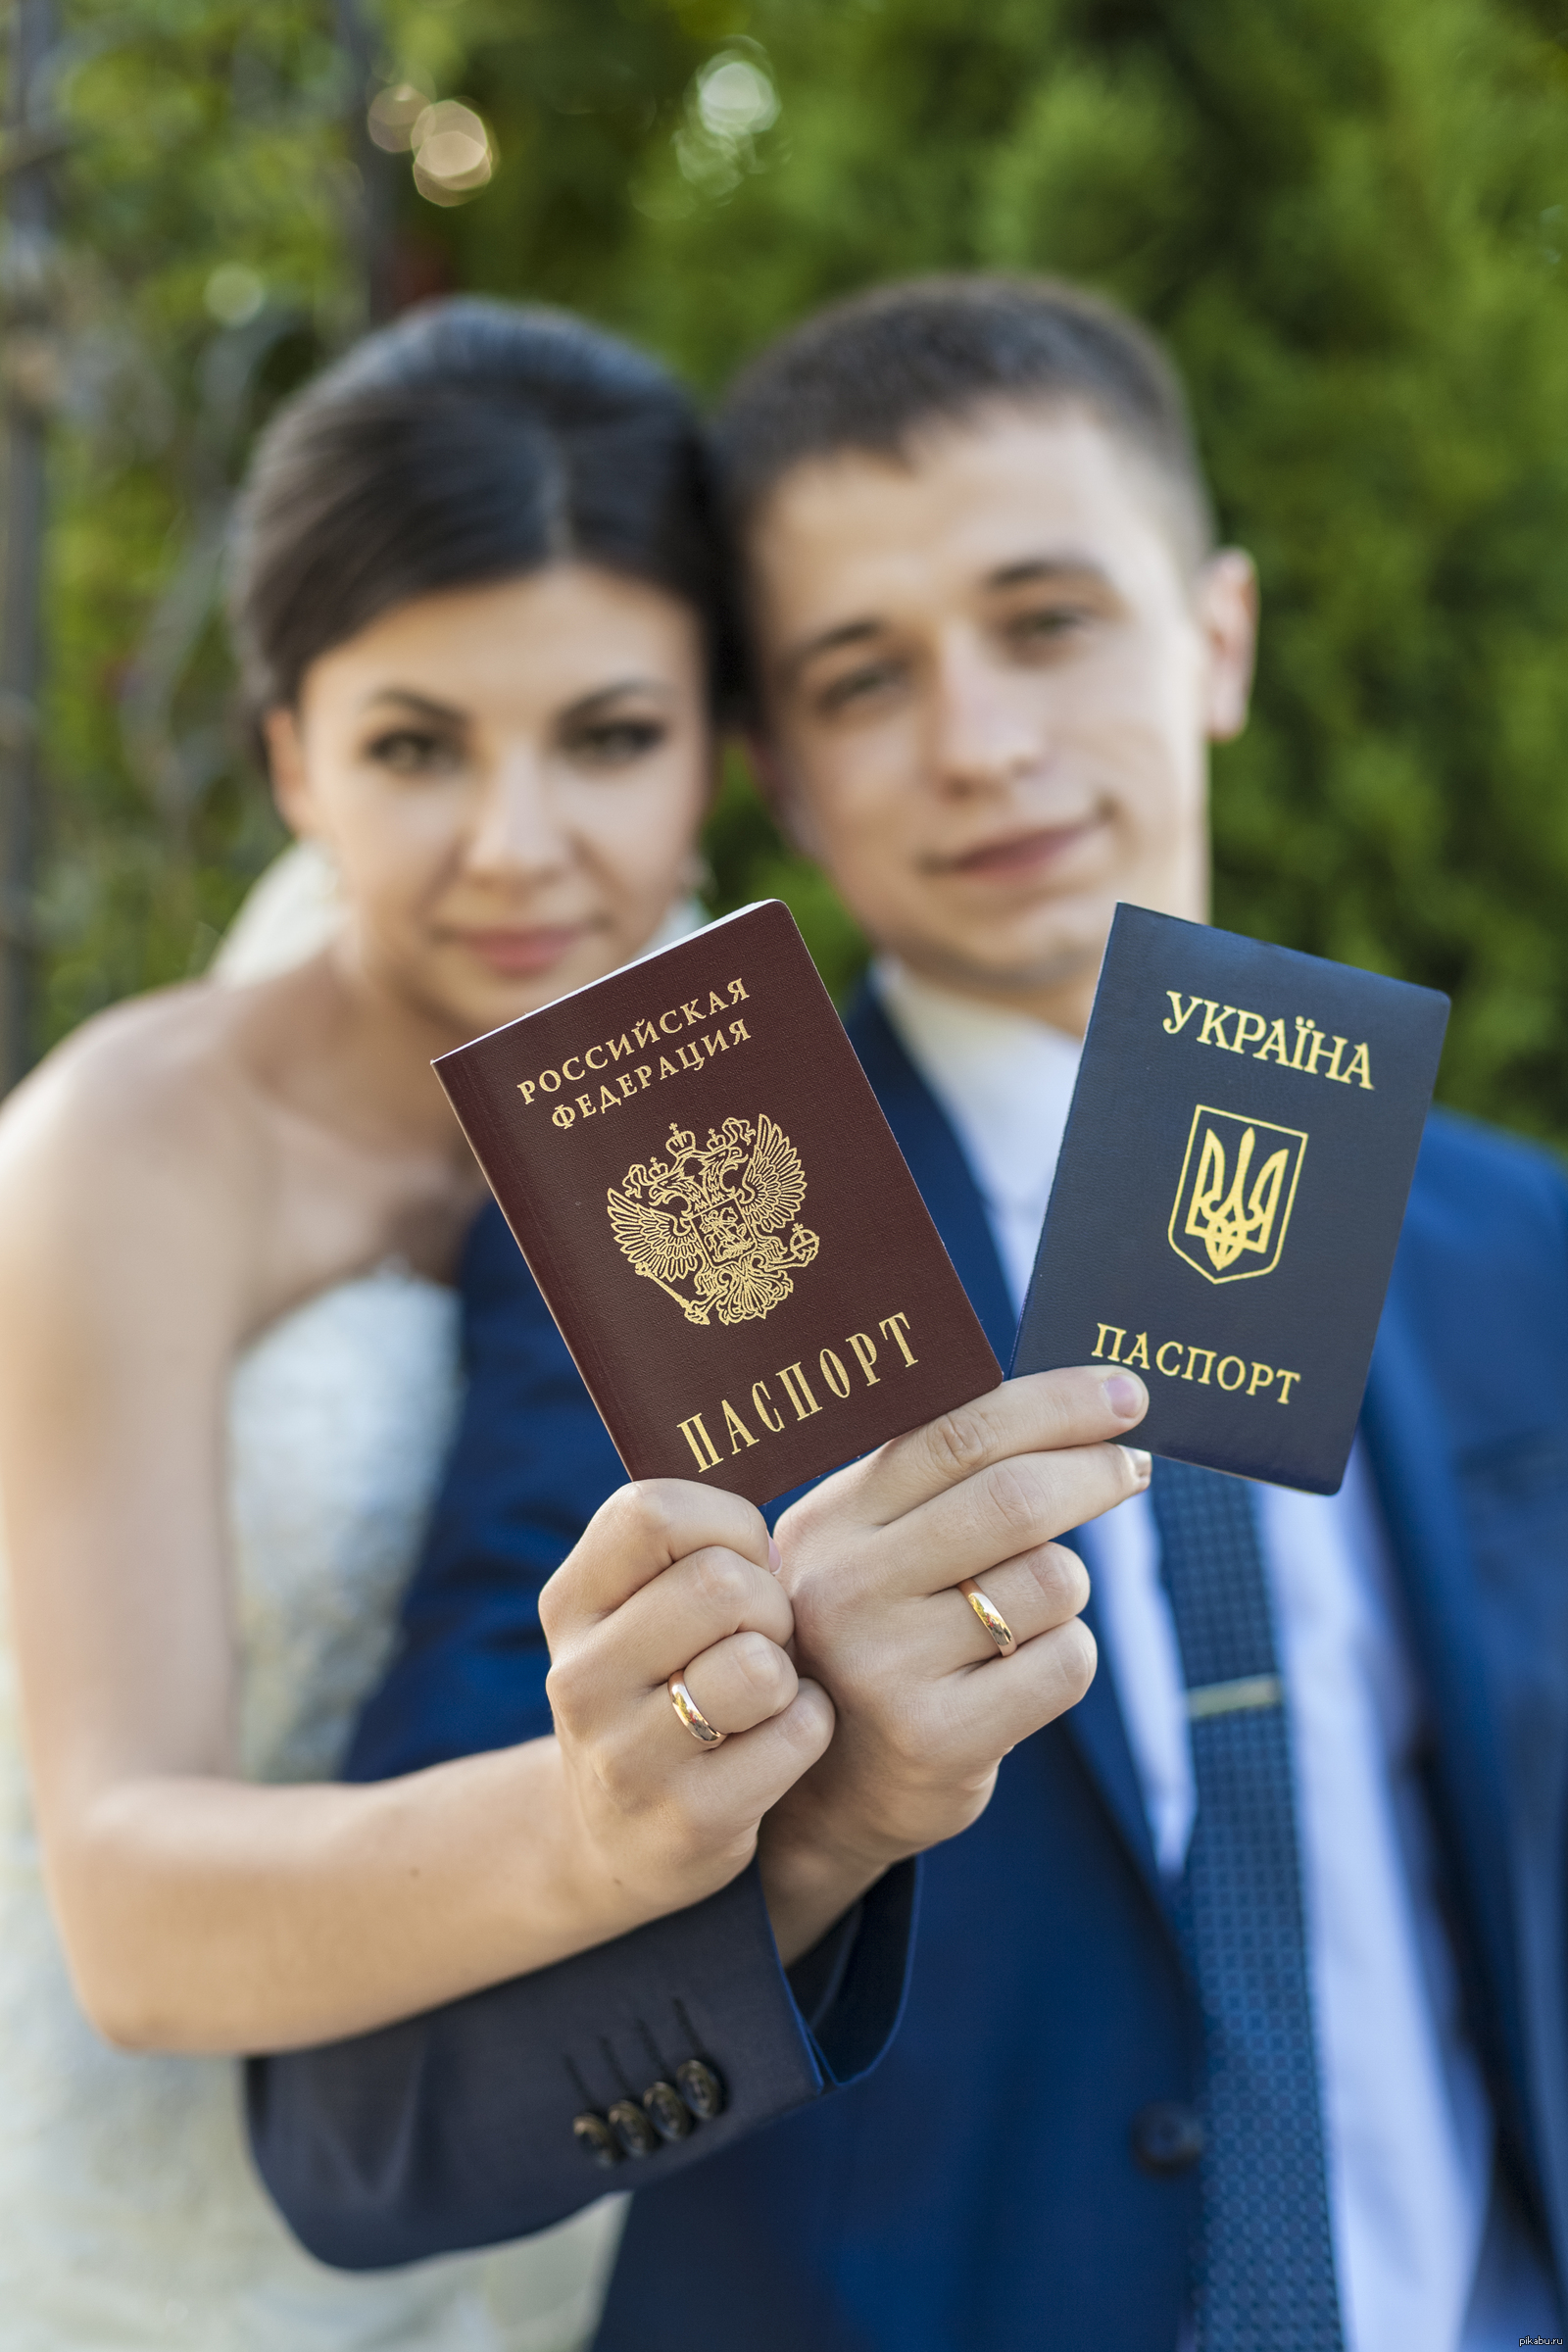 Паспорт Украины и России